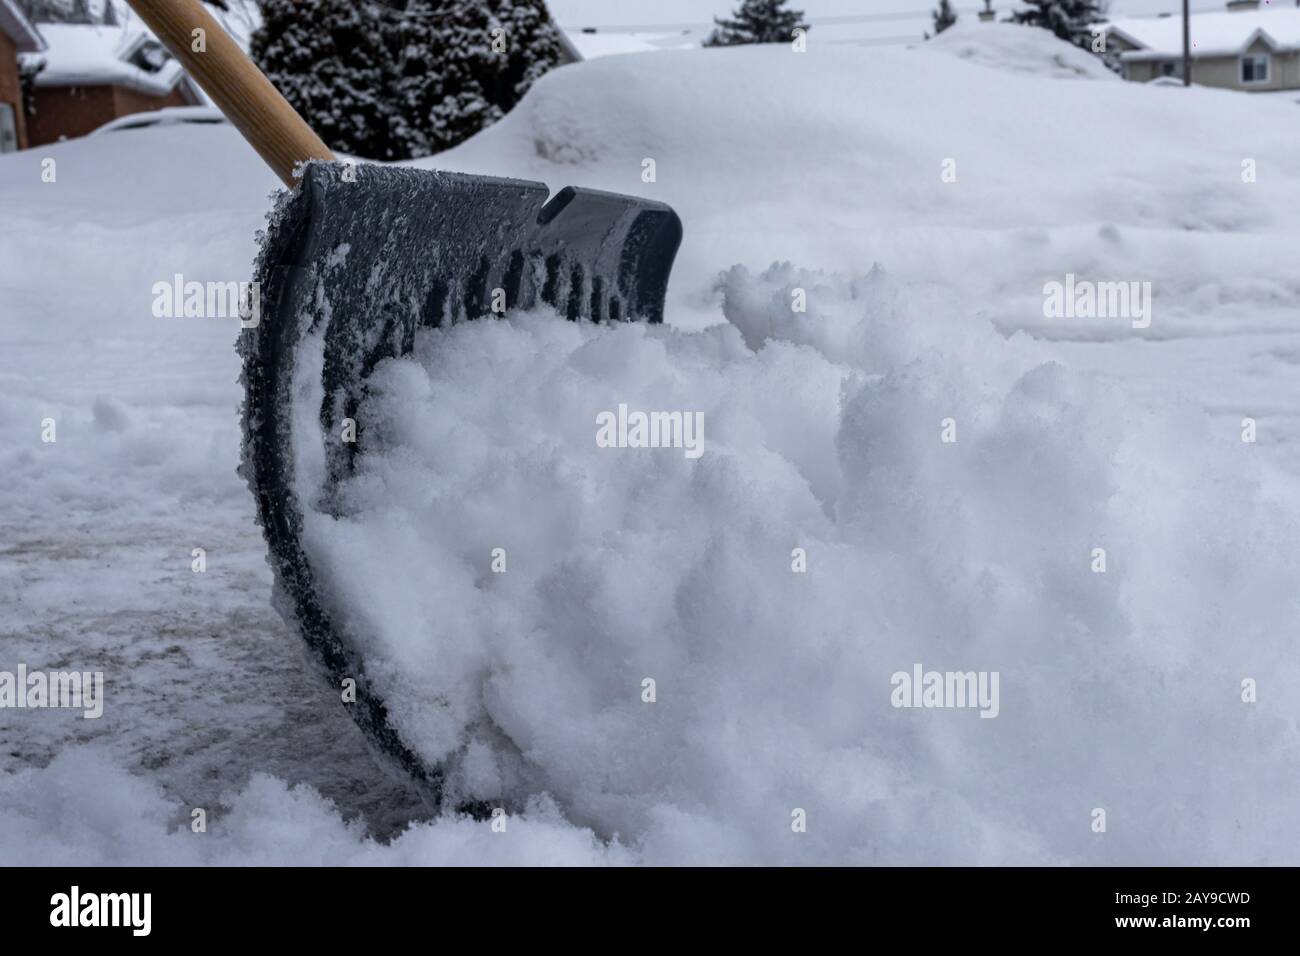 Una pala da neve sta spingendo la neve lungo un vialetto suburbano in inverno. Visto dal livello del suolo, il fondo della pala si vede scavando il fr Foto Stock